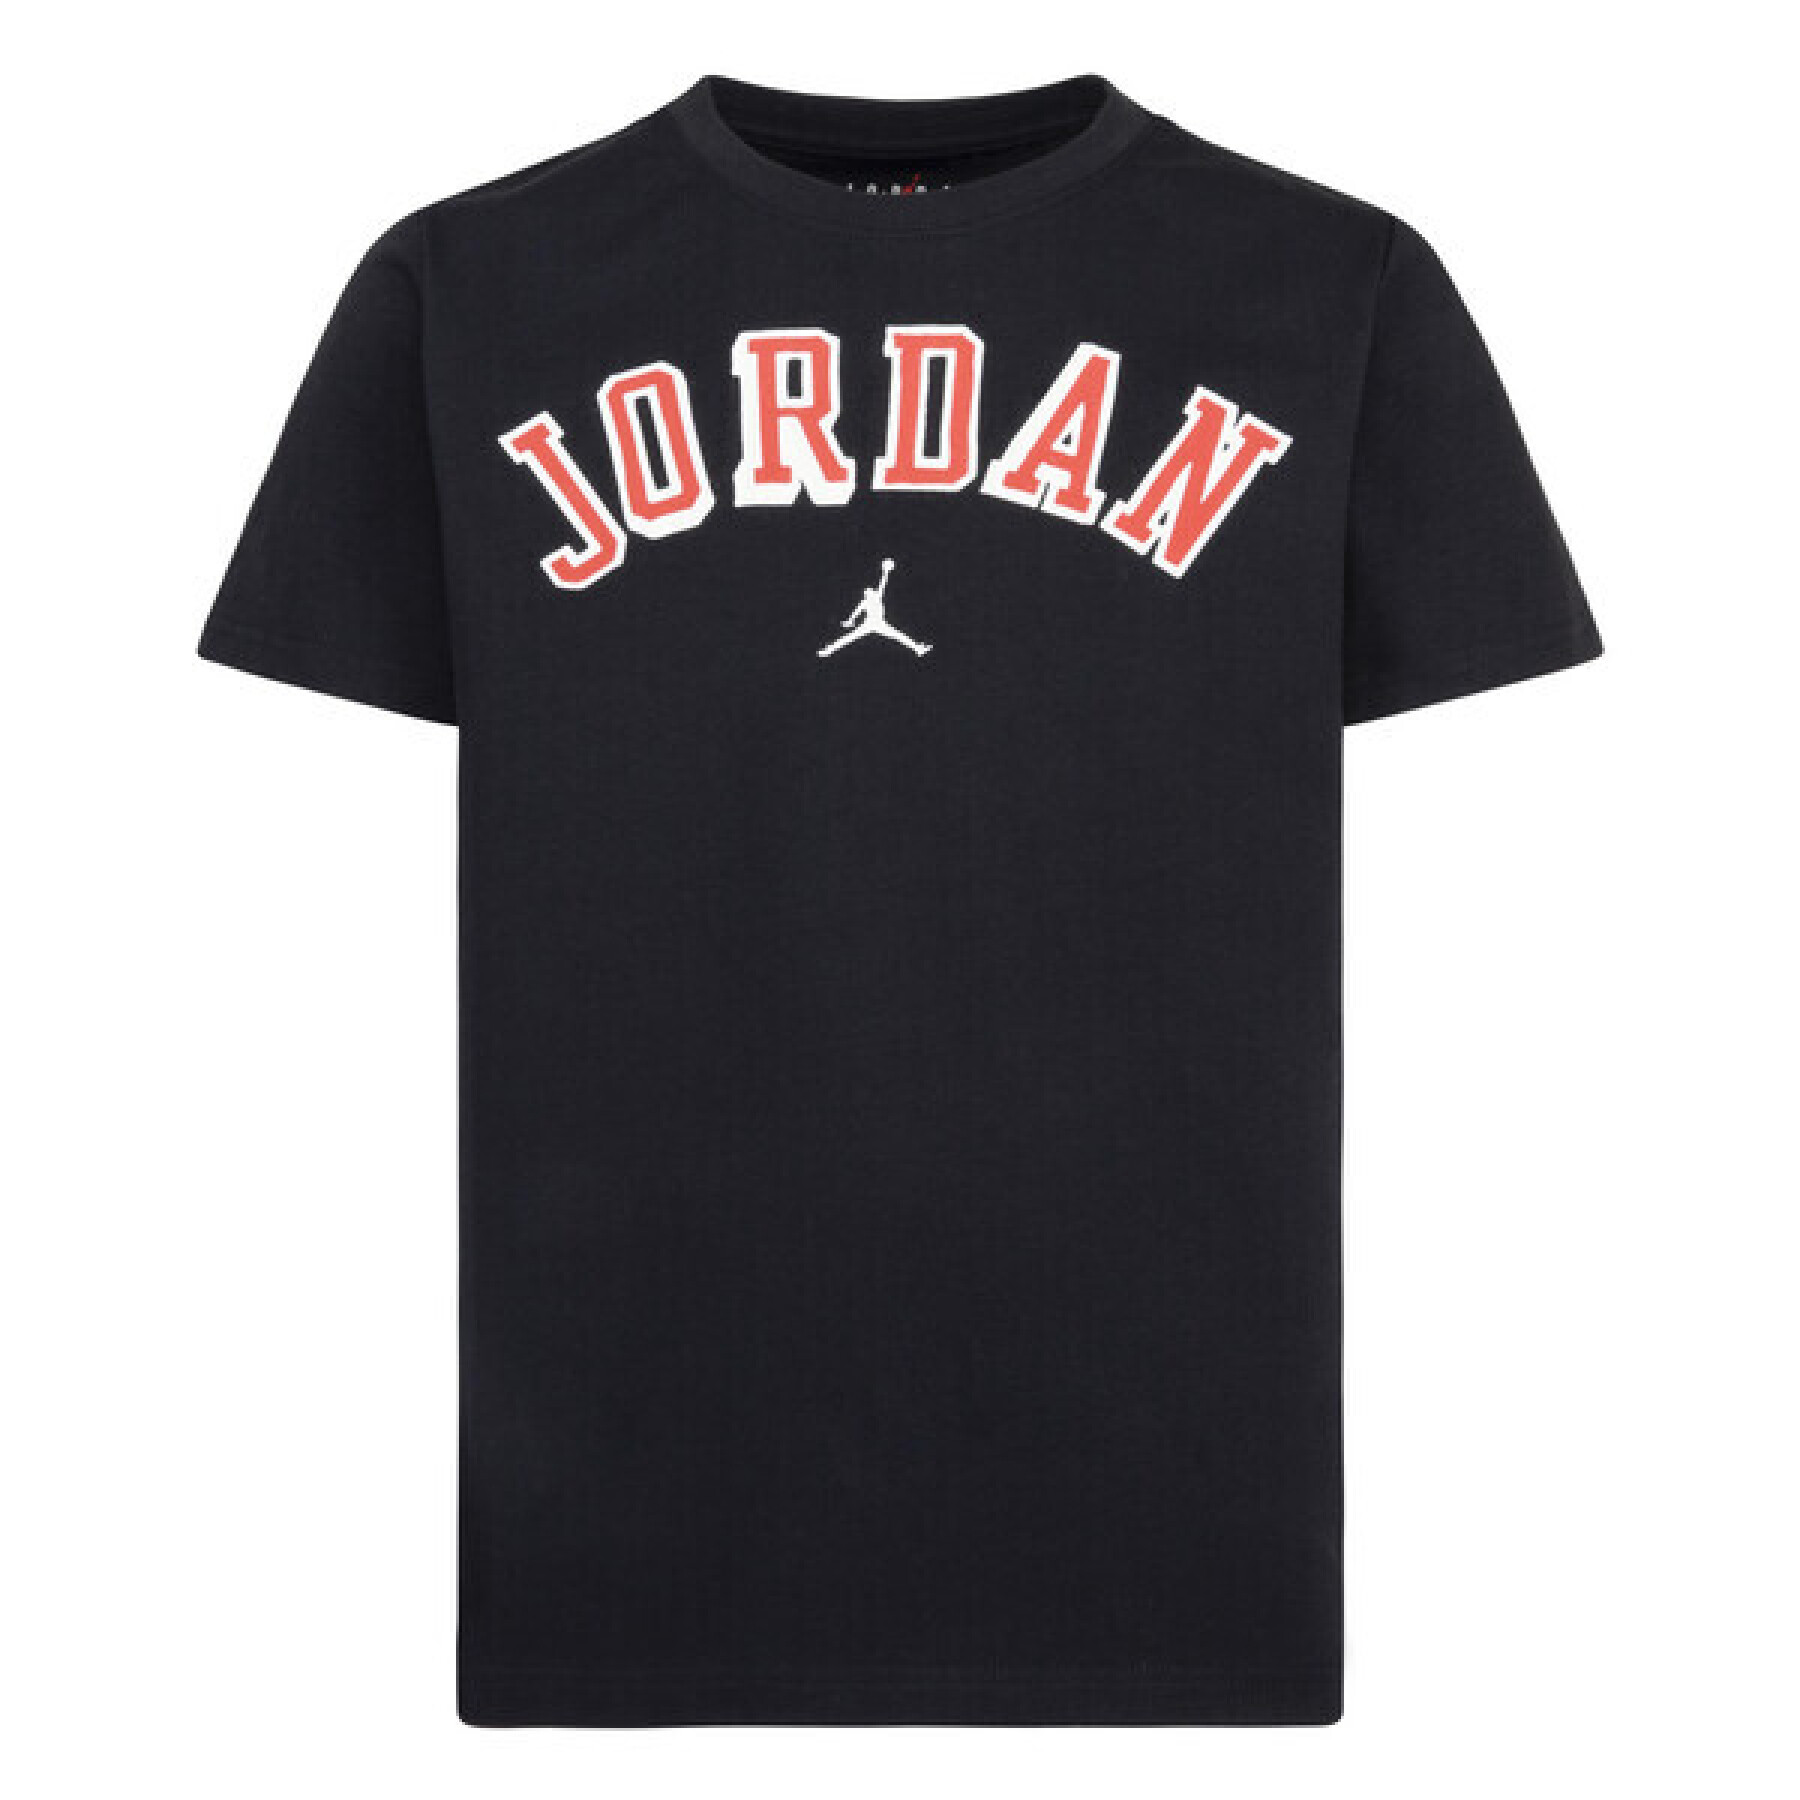 T-shirt per bambini Jordan Flight Heritage